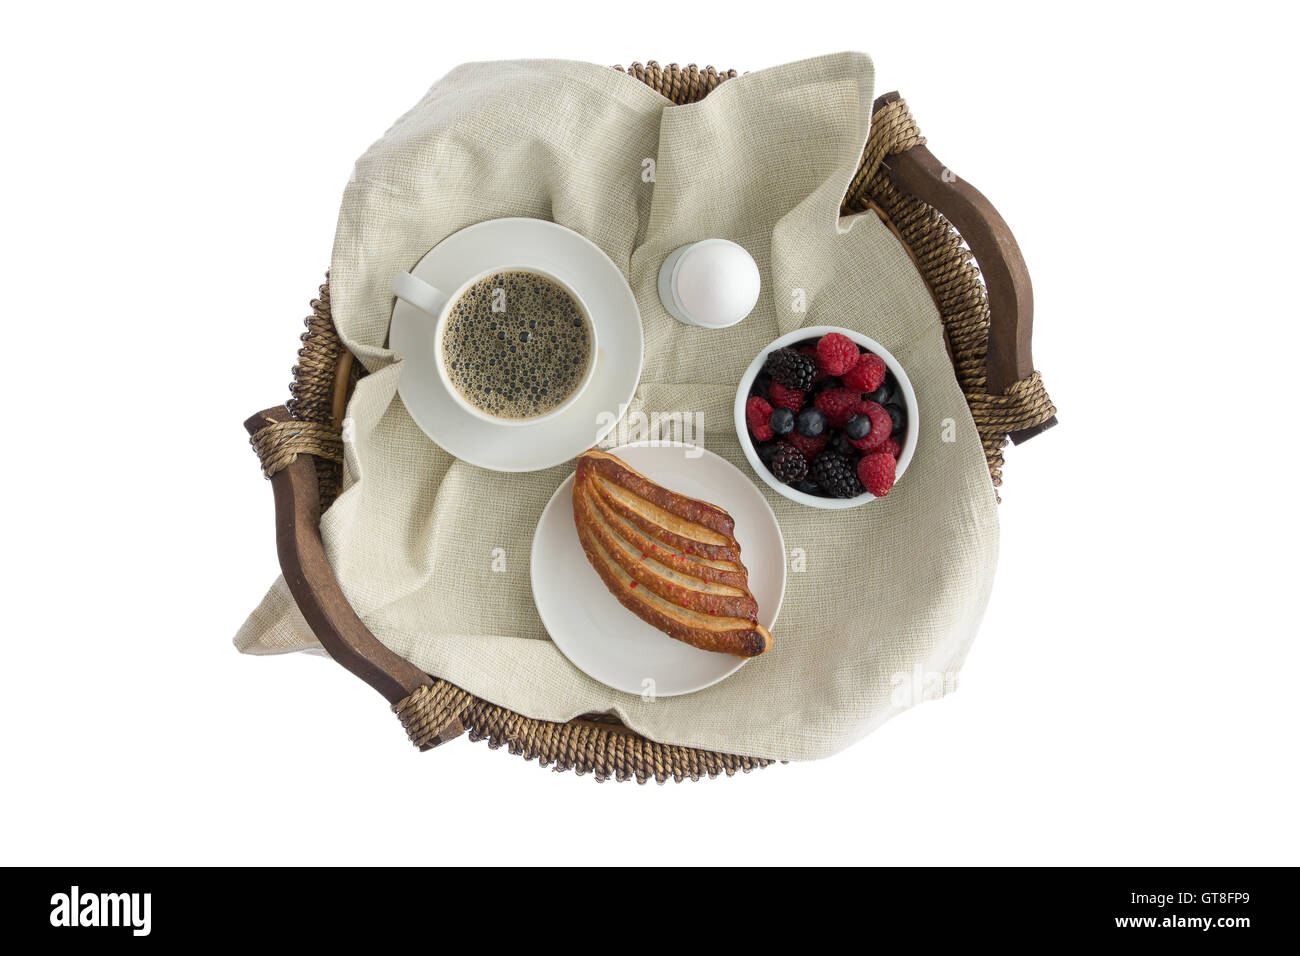 Pour un délicieux petit-déjeuner sur un plateau en osier rustique avec une tasse de café expresso, oeuf mollet, frais de ramequin berri assortis Banque D'Images